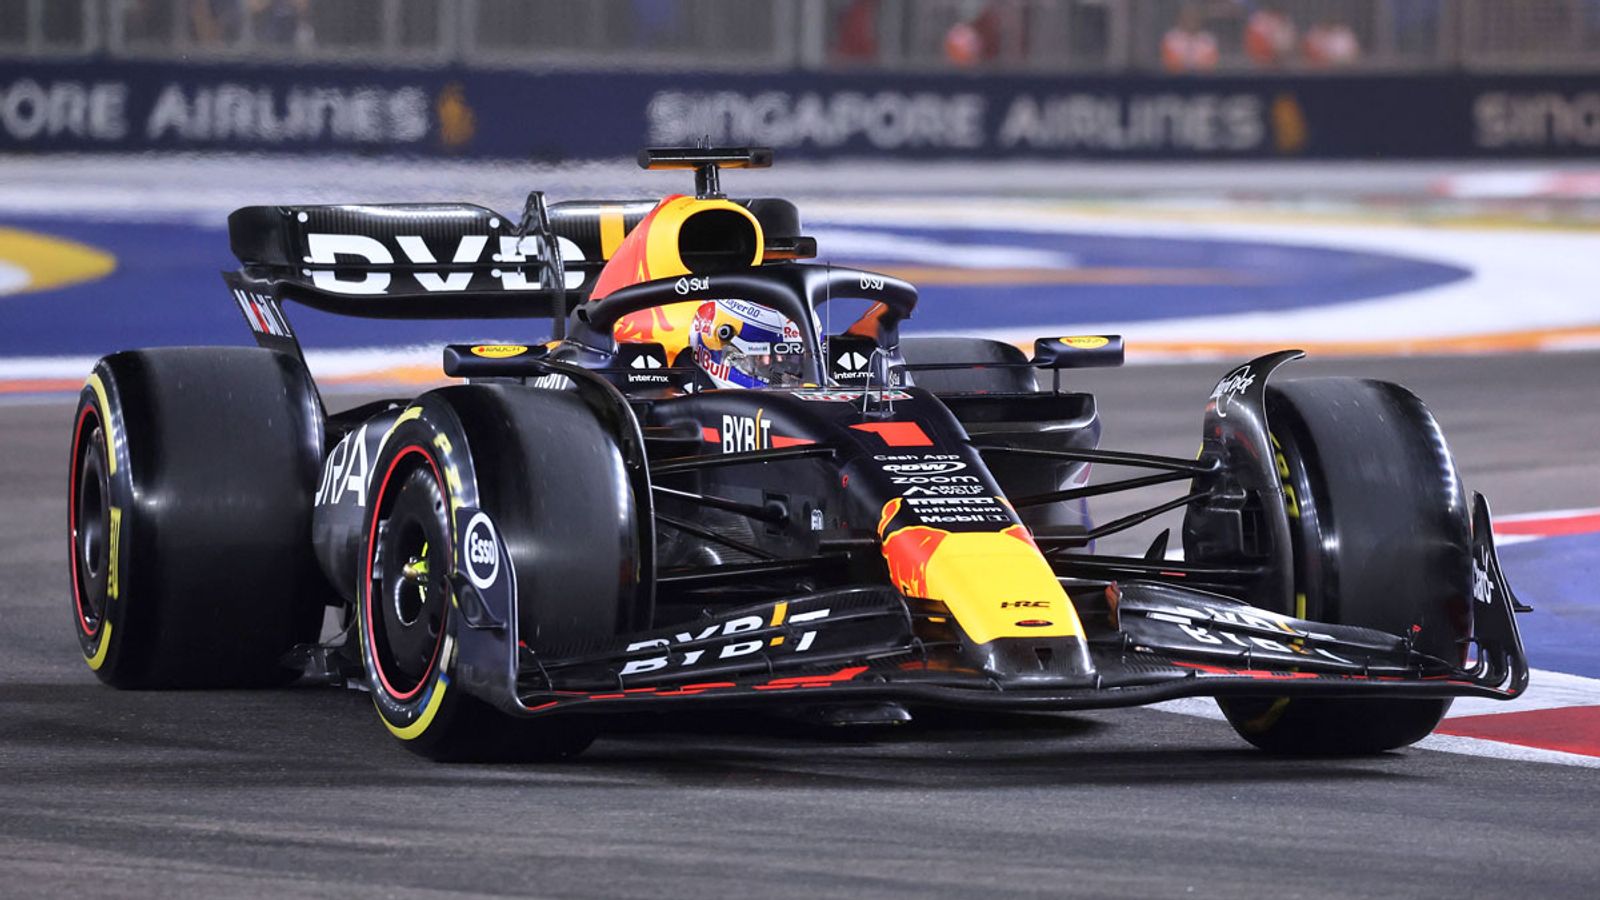 Formel 1 Liveticker Das Qualifying zum GP von Singapur im Liveblog Formel 1 News Sky Sport